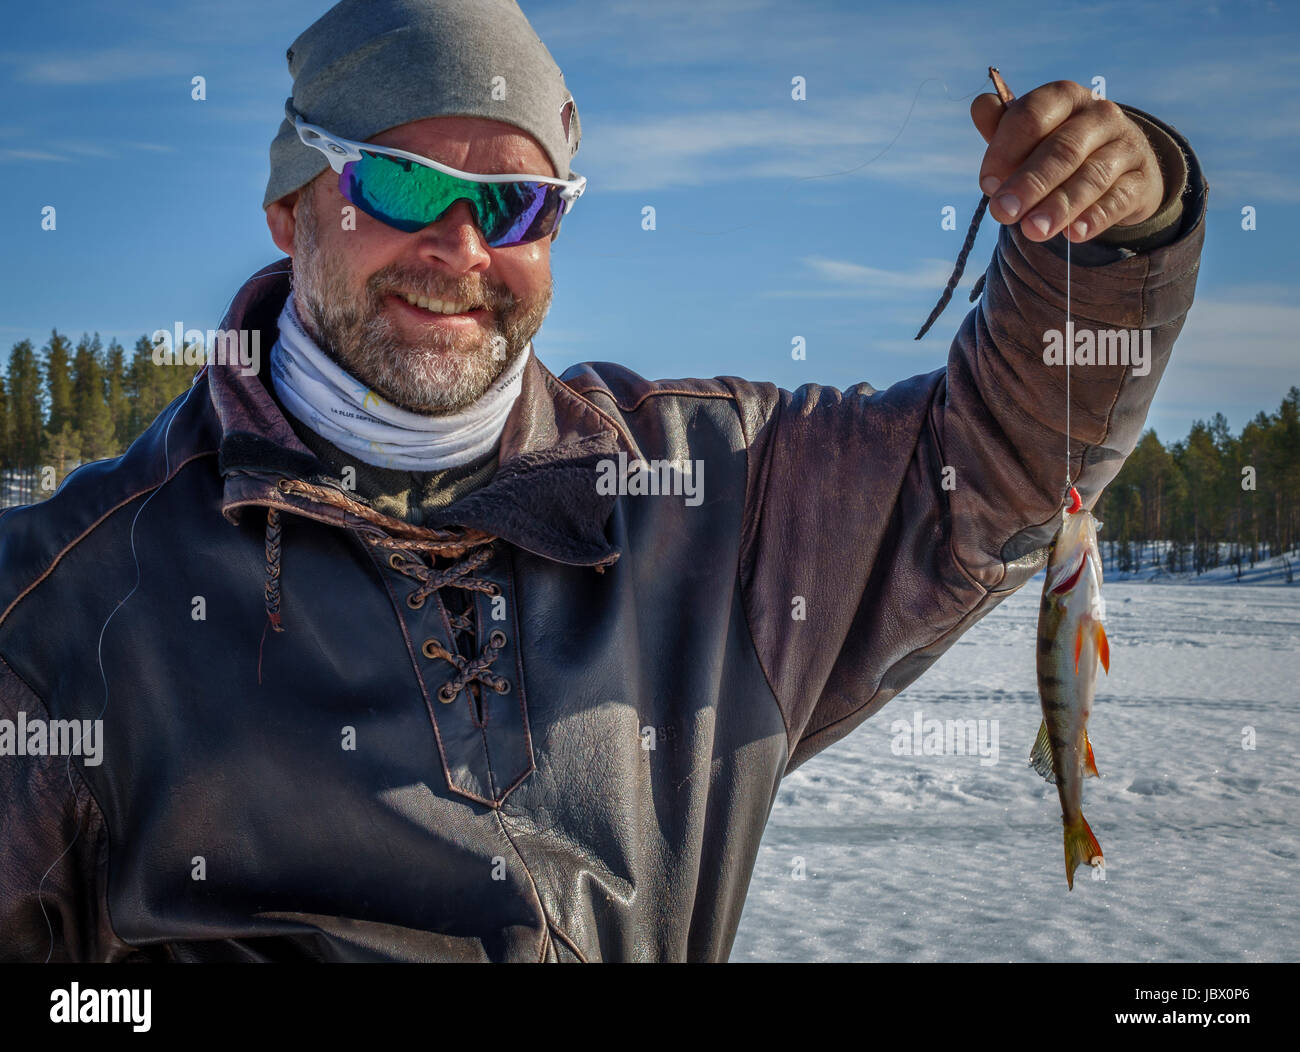 Ice fishing, Kangos, Lapland, Sweden Stock Photo